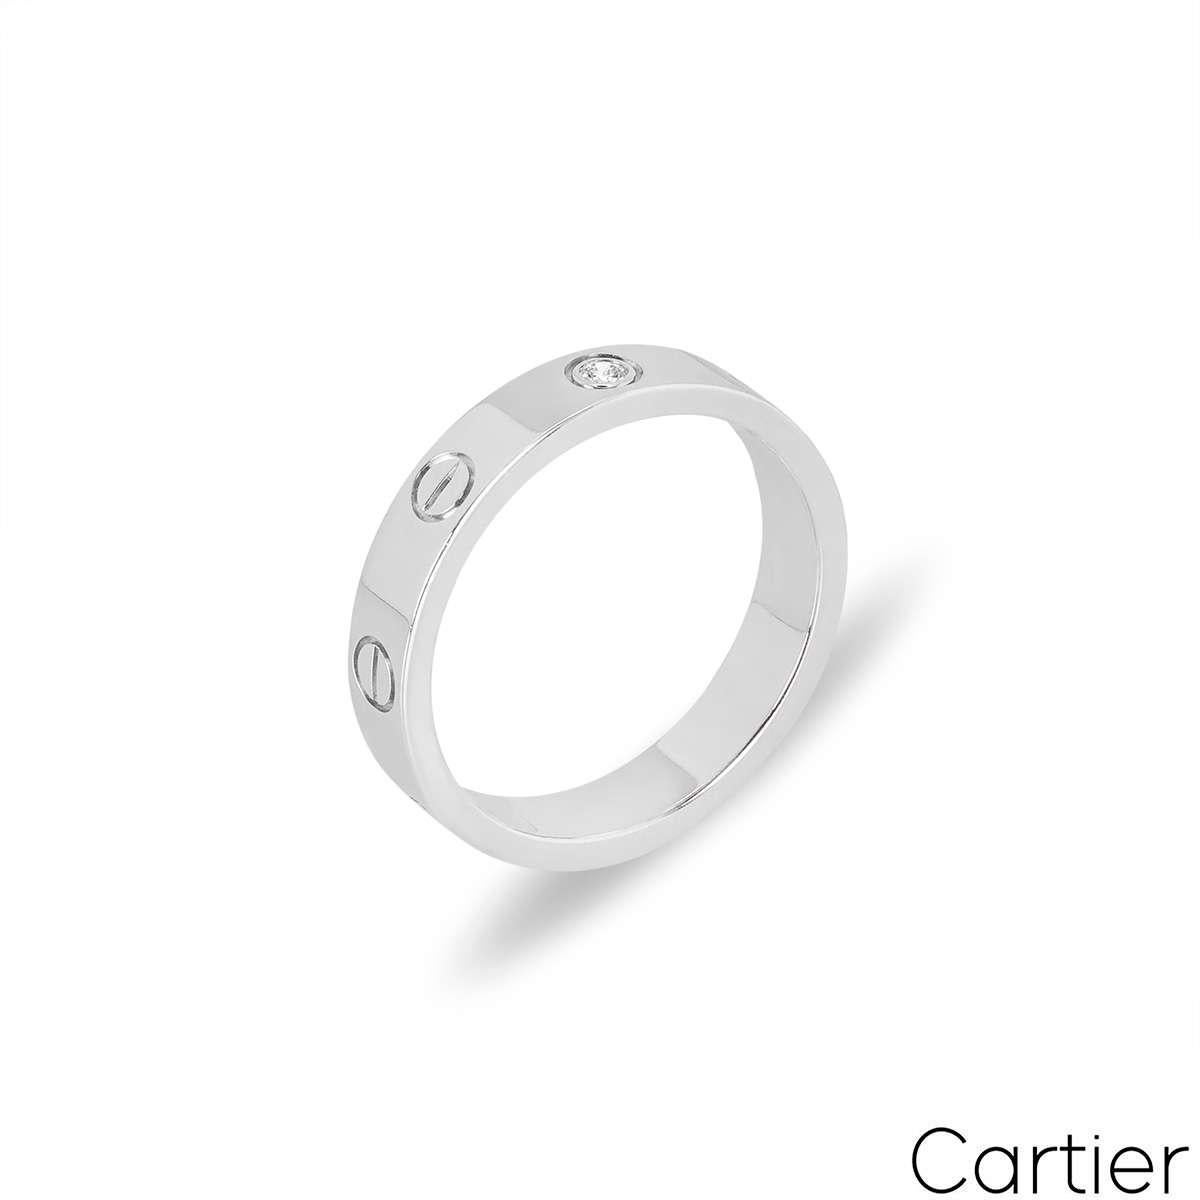 Une alliance en diamants de Cartier en or blanc de la collection Love. La bague comprend les vis emblématiques de Cartier et un seul diamant rond de taille brillant serti au centre, d'une valeur totale de 0,02ct. Mesurant 4 mm de largeur, cette